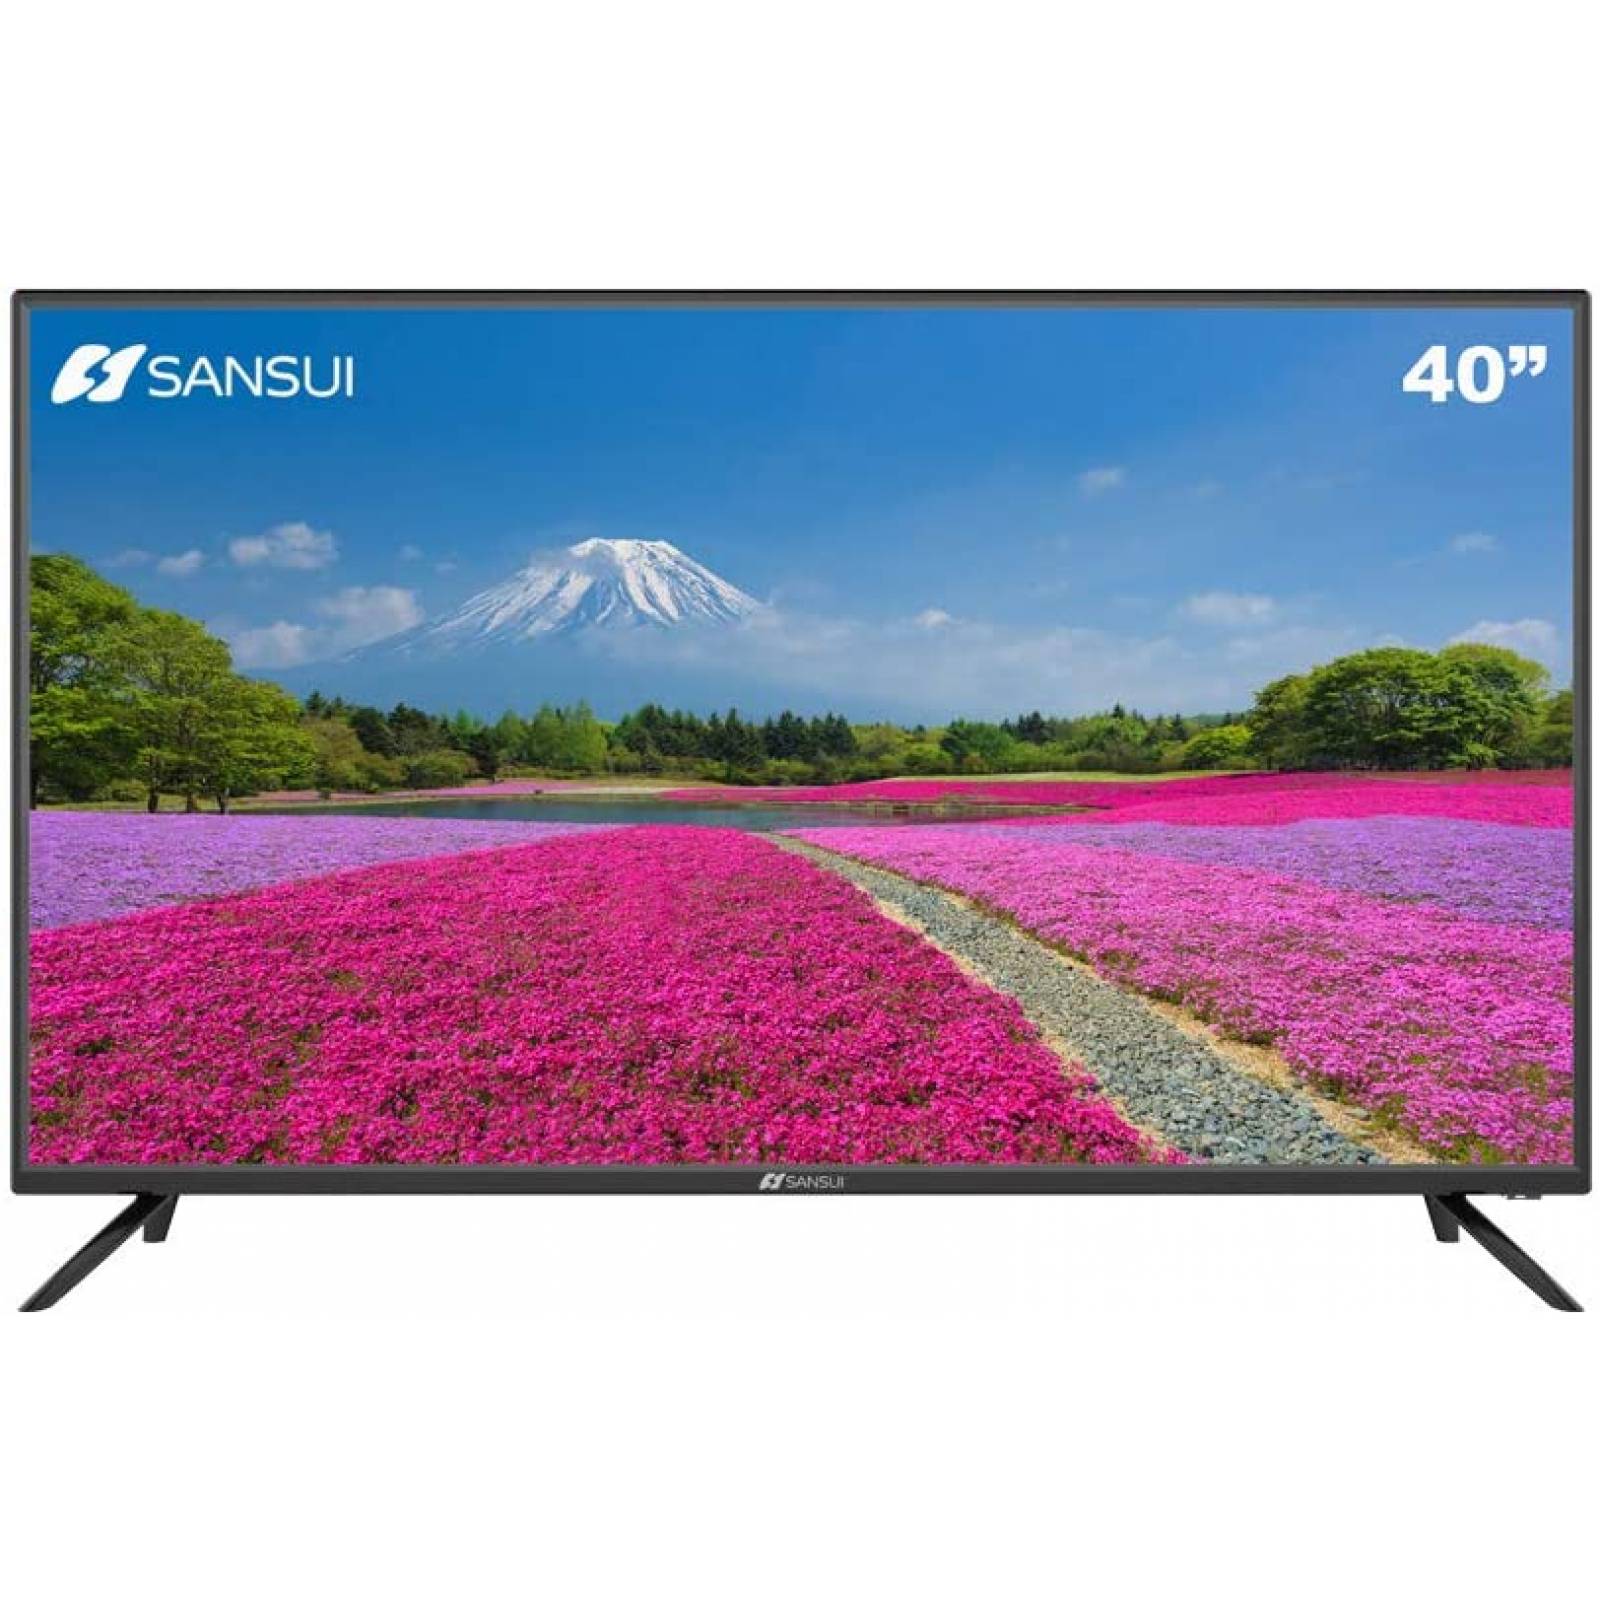 PANTALLA 32 PULGADAS SMART TV SMX32V1HA SANSUI FULL HD